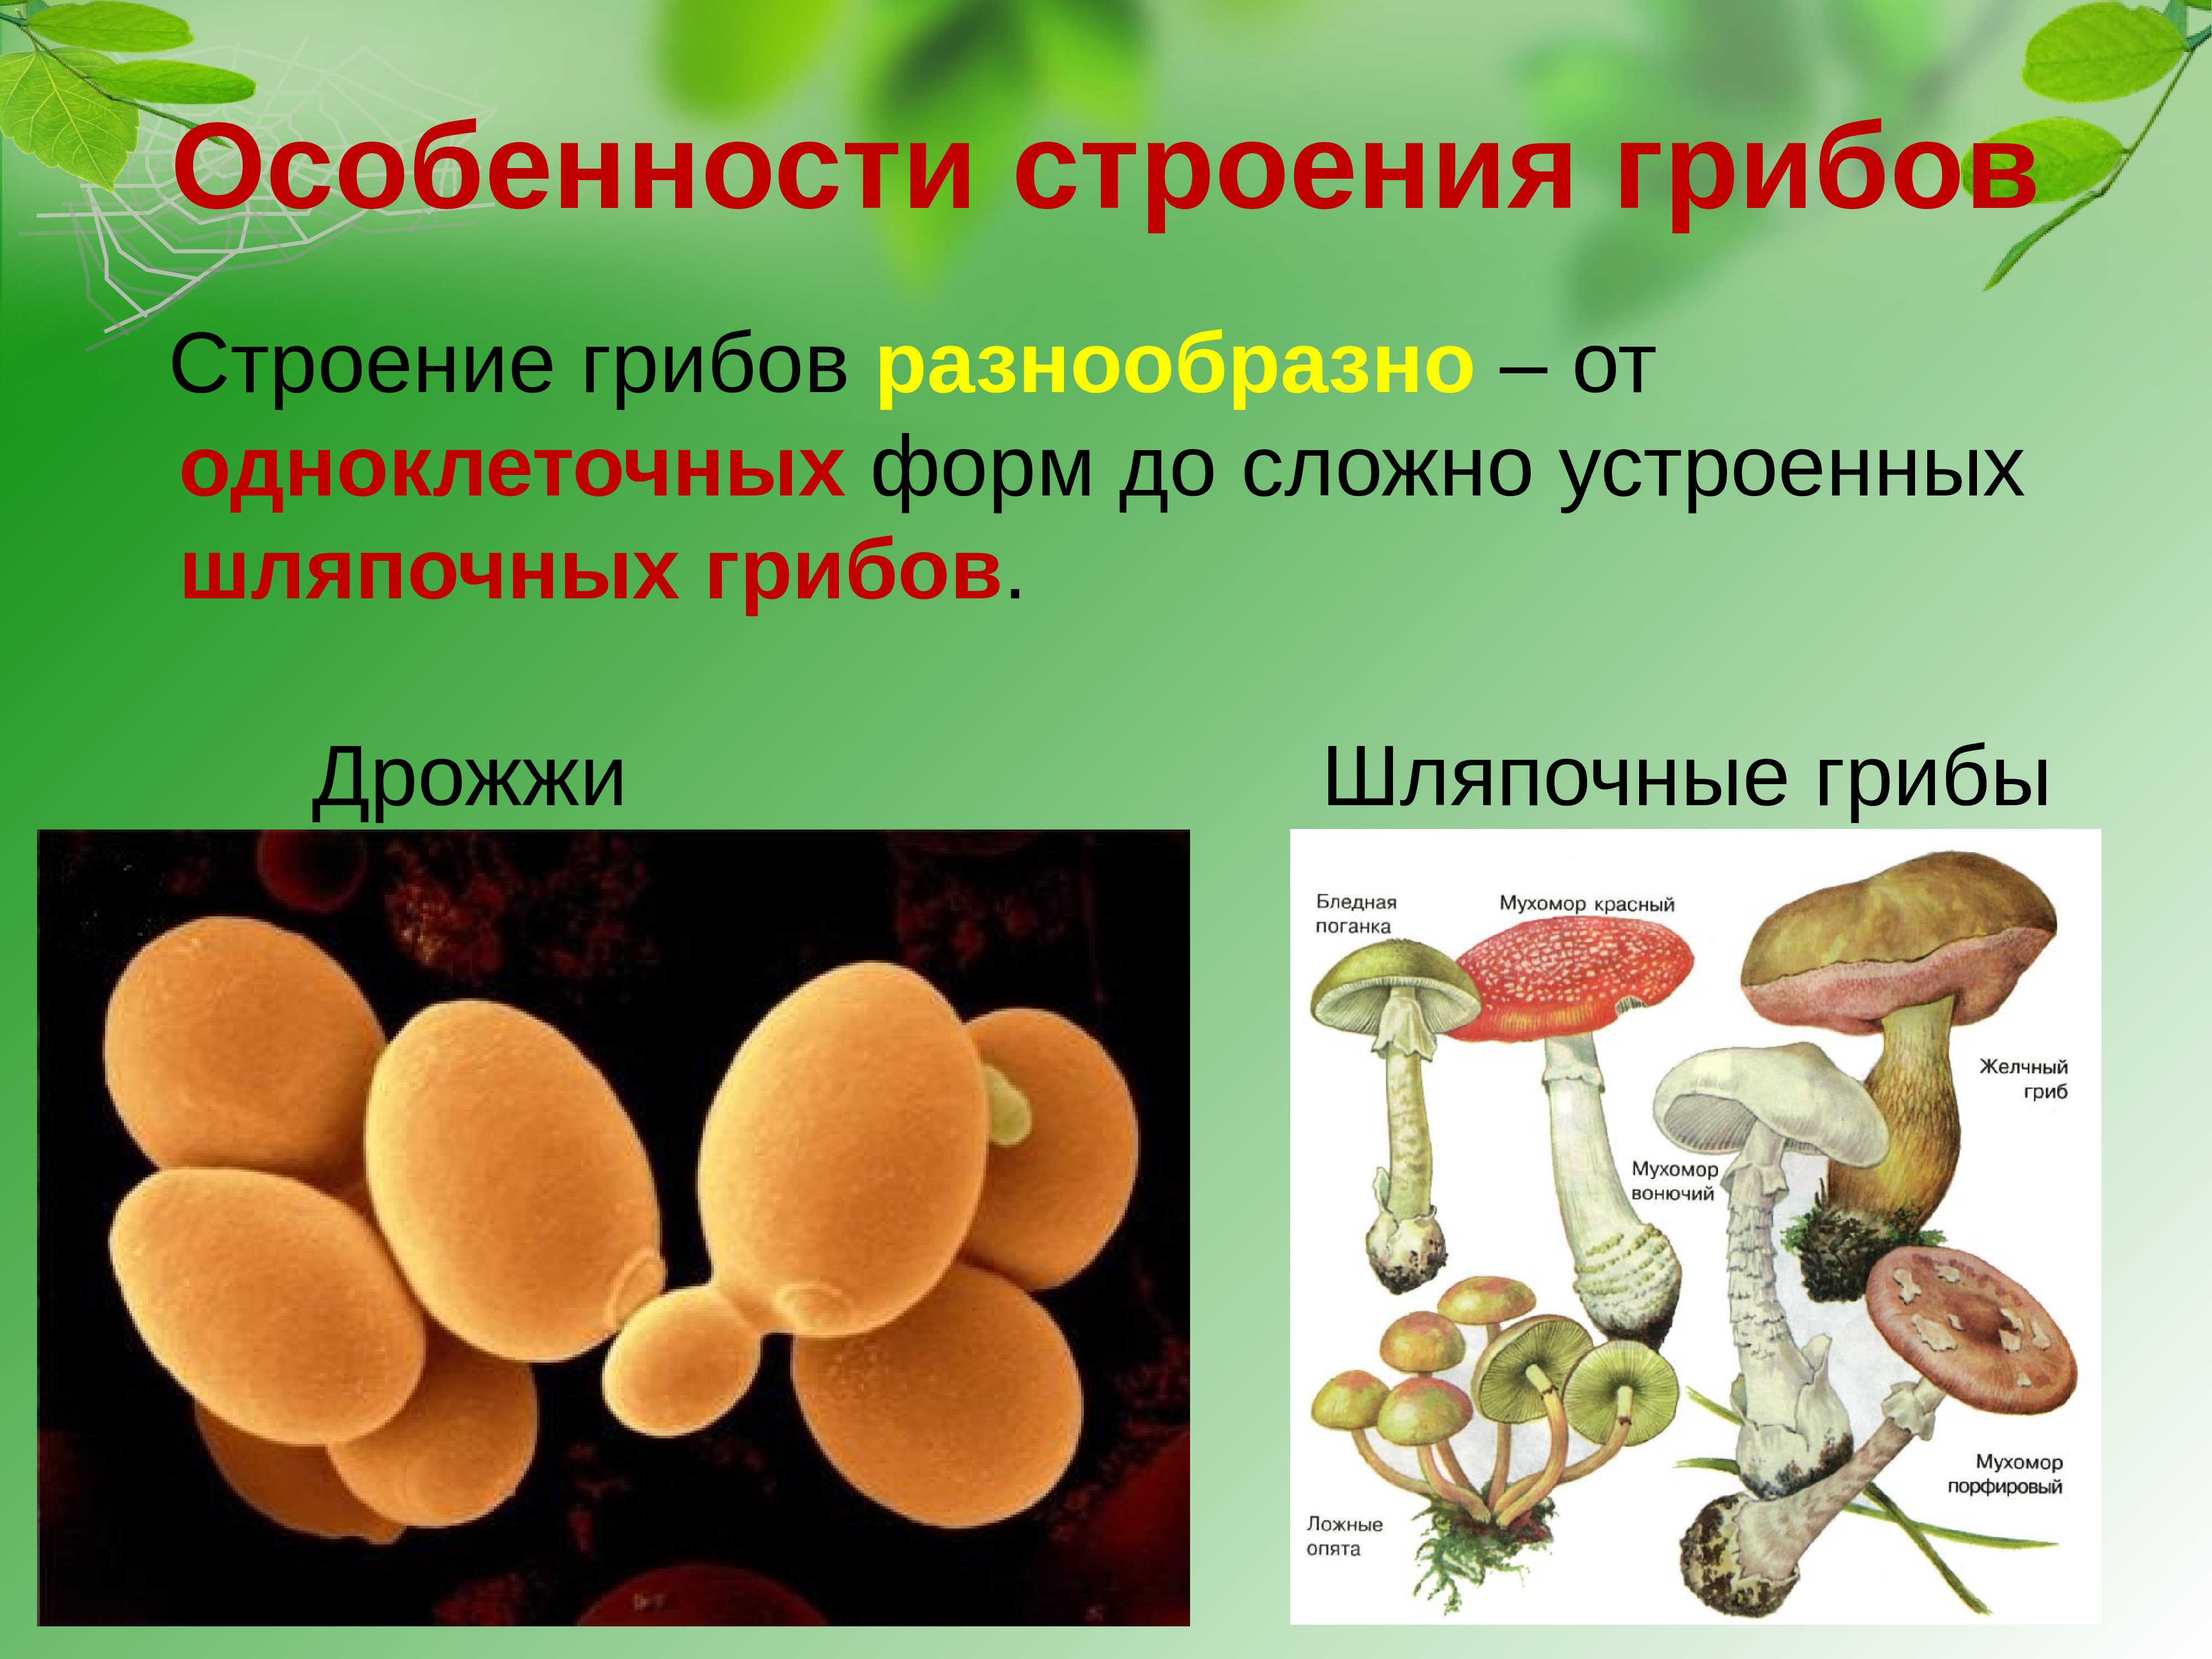 Группы грибов 6 класс биология. Строение одноклеточных грибов дрожжи. Строение грибов грибов. Грибы строение шляпочных грибов. Царство грибов одноклеточные (дрожжи).